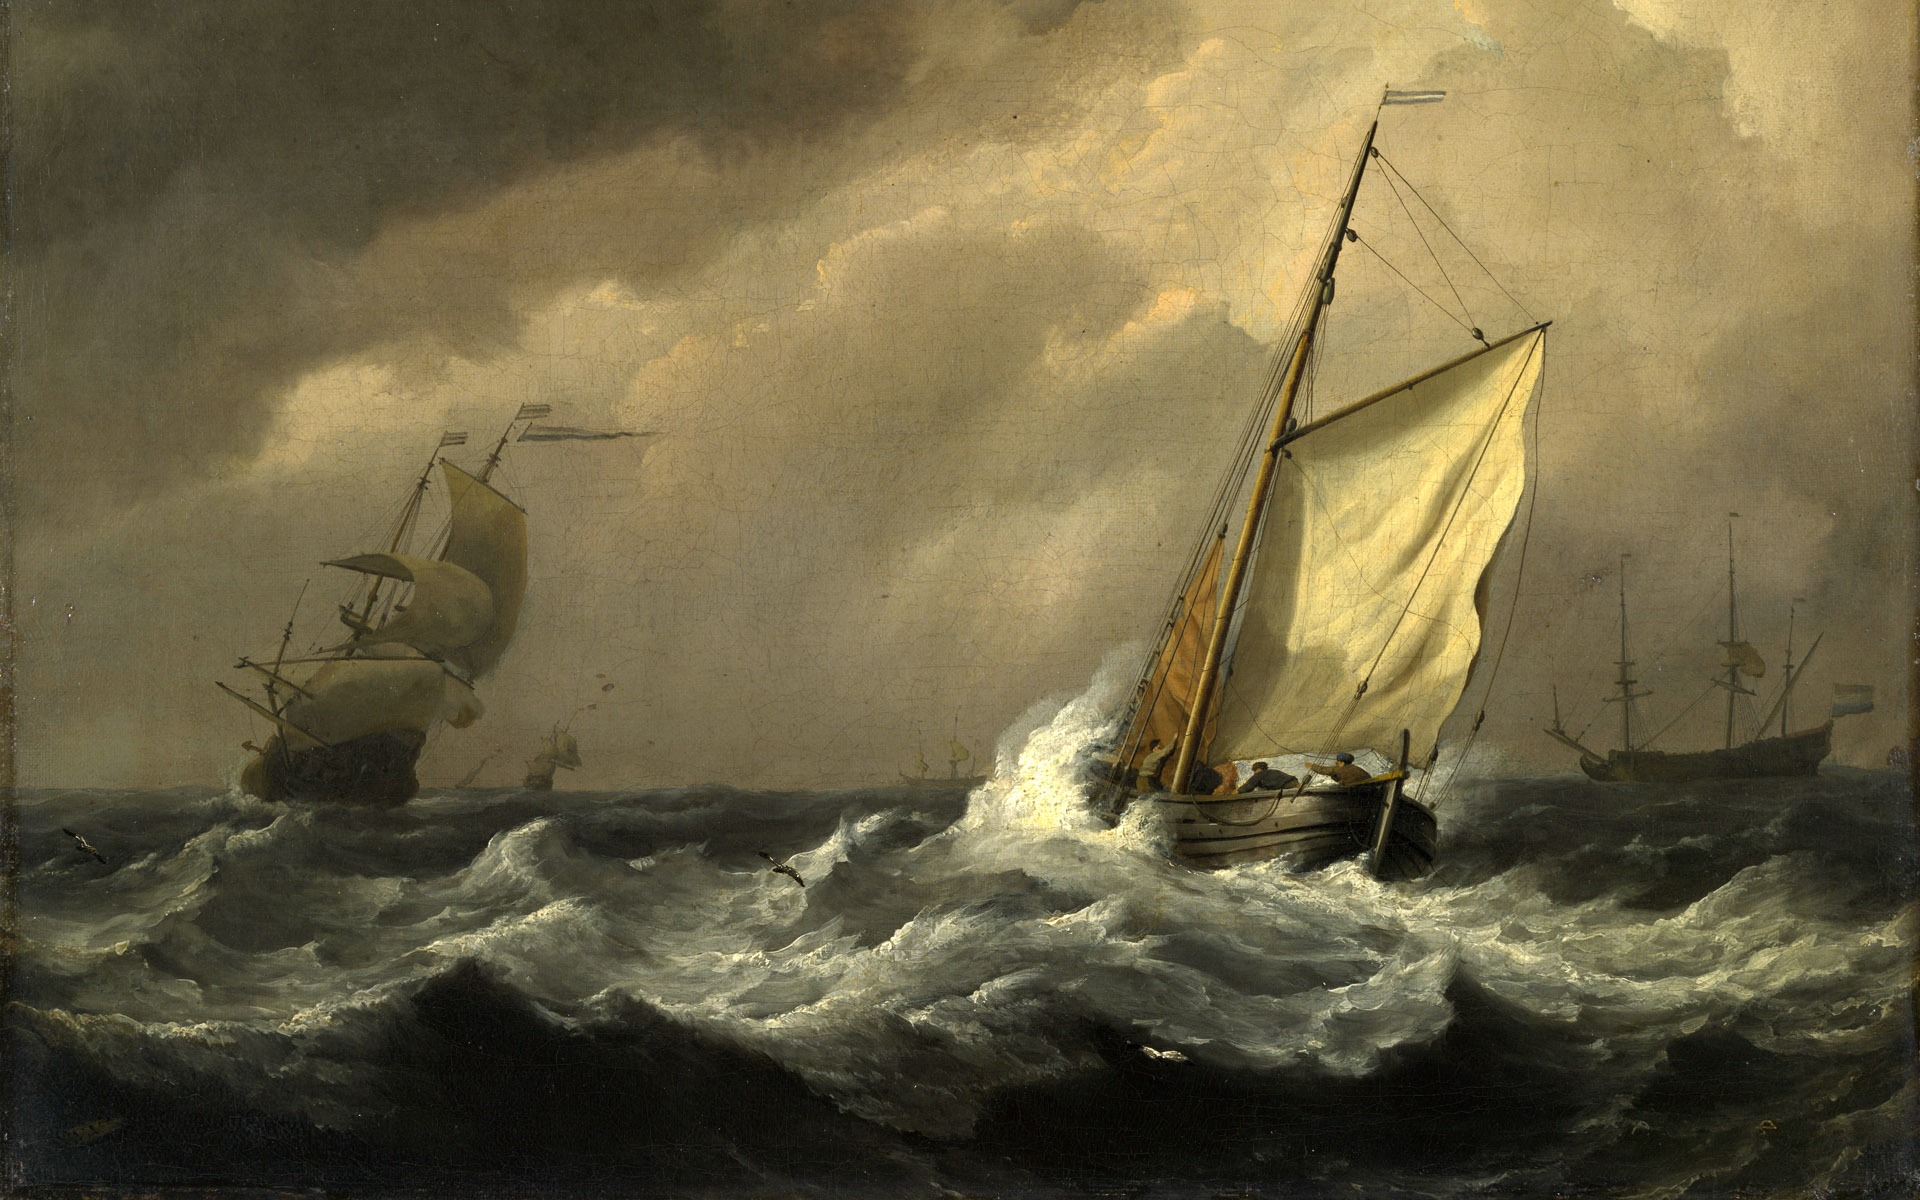 伦敦画廊帆船 壁纸(二)14 - 1920x1200